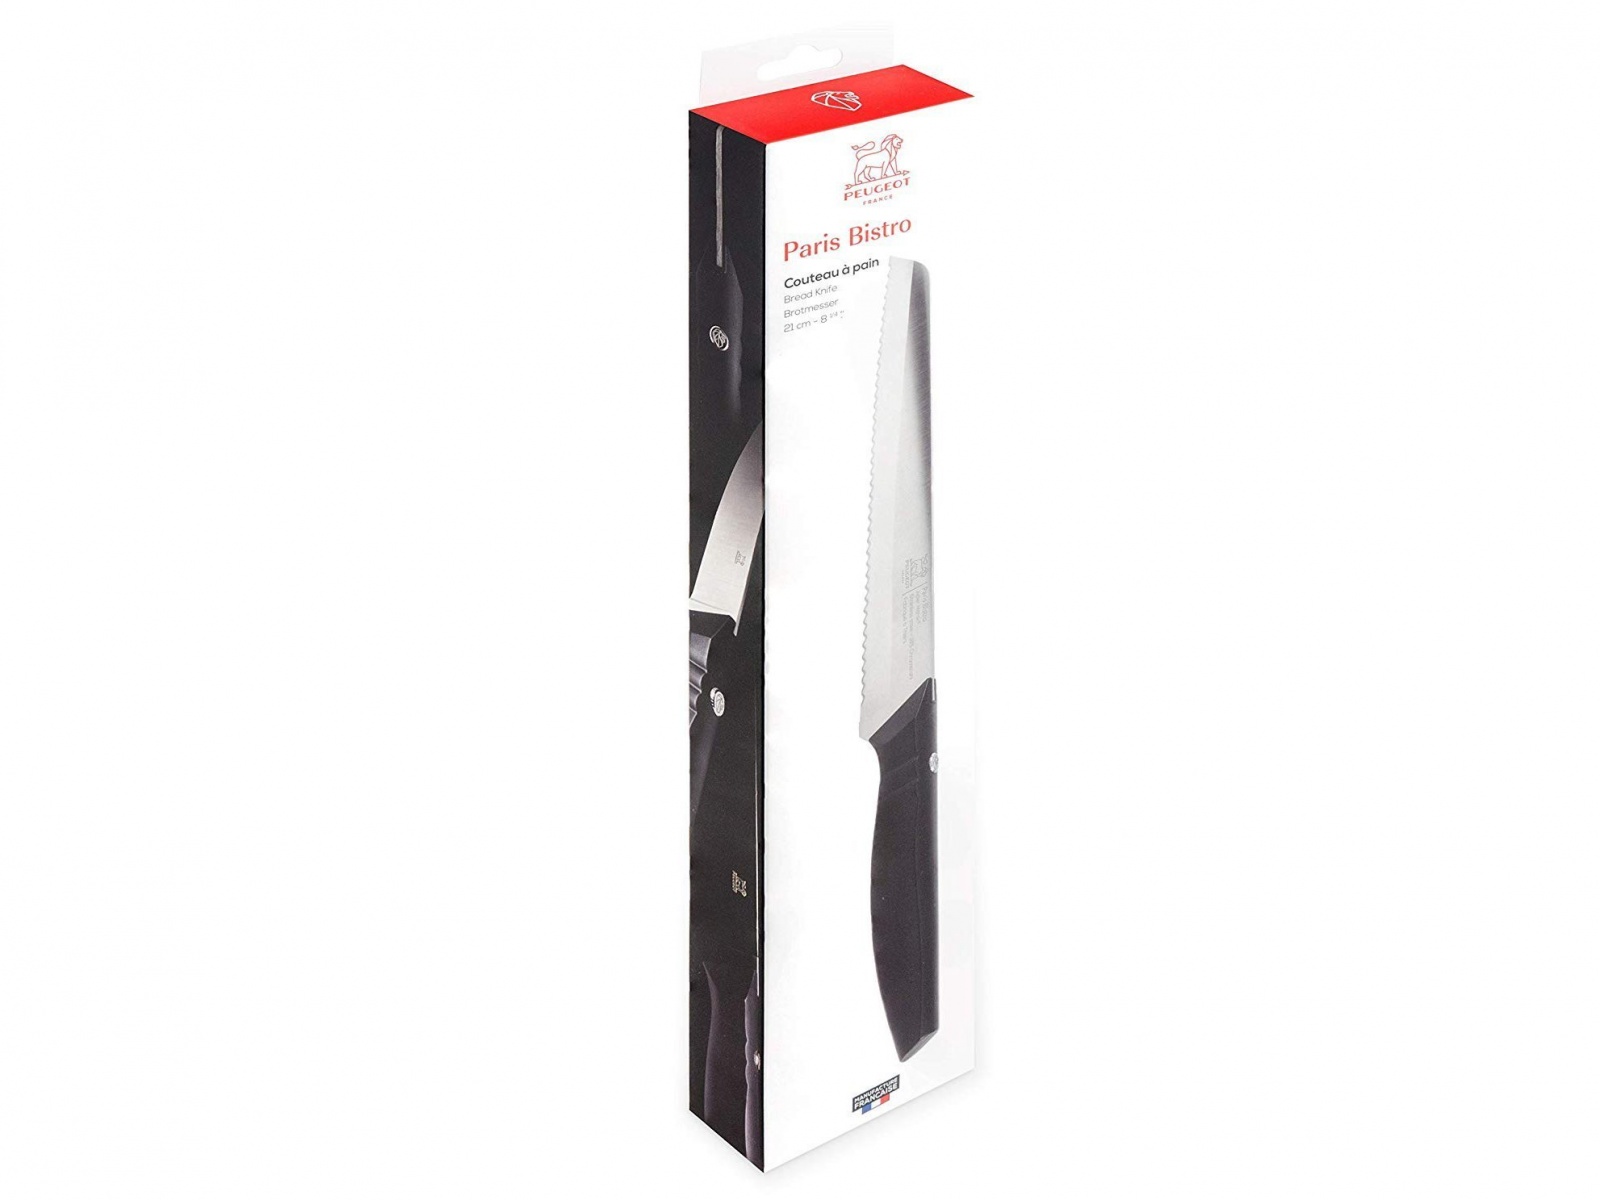 Нож для хлеба Paris Bistro Peugeot 21 см